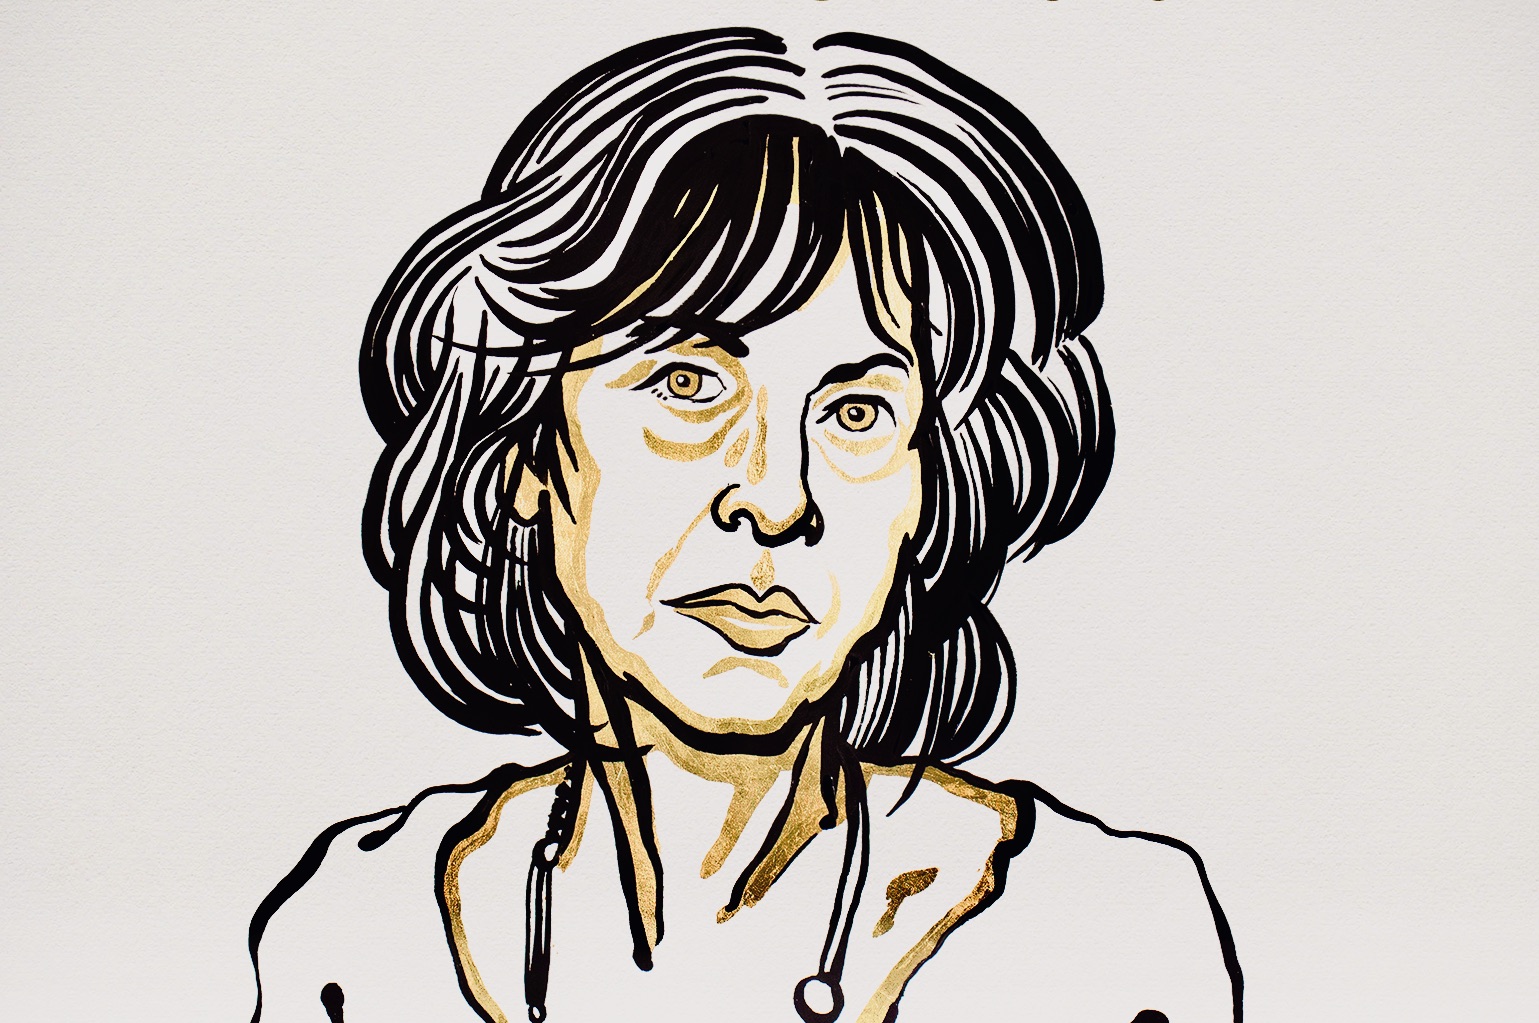 Λουίζ Γκλουκ. Ποια είναι η ποιήτρια που κέρδισε το Νομπελ Λογοτεχνίας για το 2020